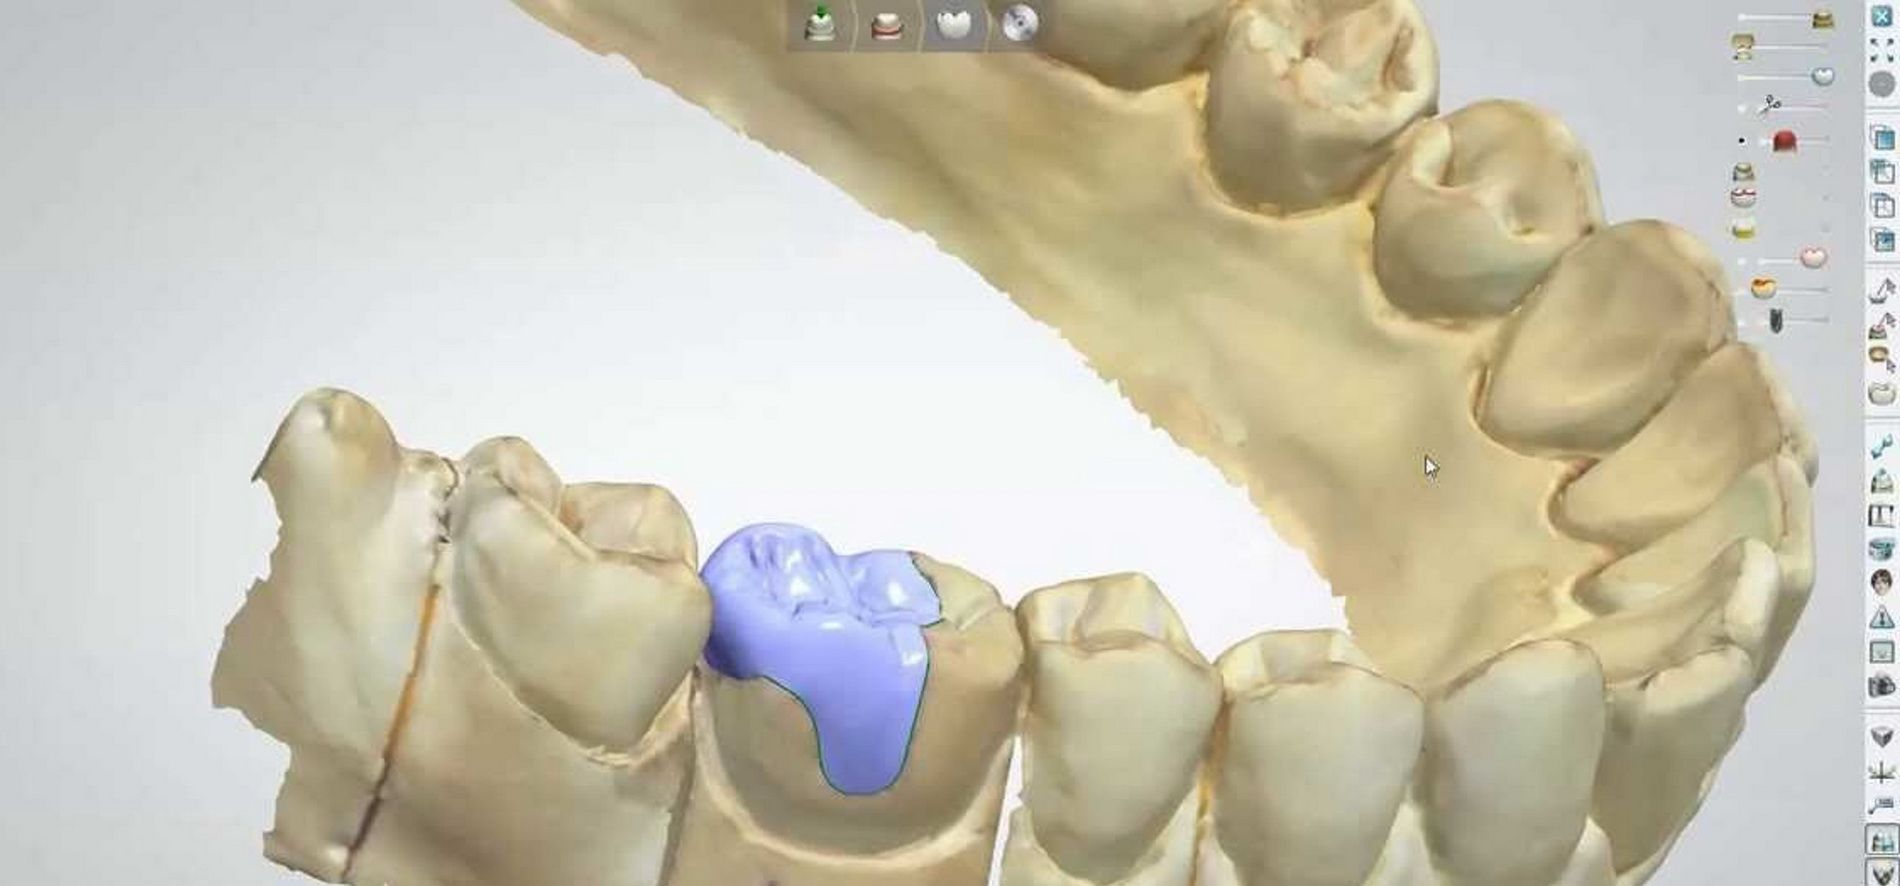 Imatges d'un cas real en clínica dental Padrós amb el sistema CEREC CAD-CAM. Amb l'ús del programari de disseny podem millorar el disseny i creació de restauracions dentals, especialment pròtesis dentals incloent corones, caretes, ponts, implants i aparells d'ortodòncia